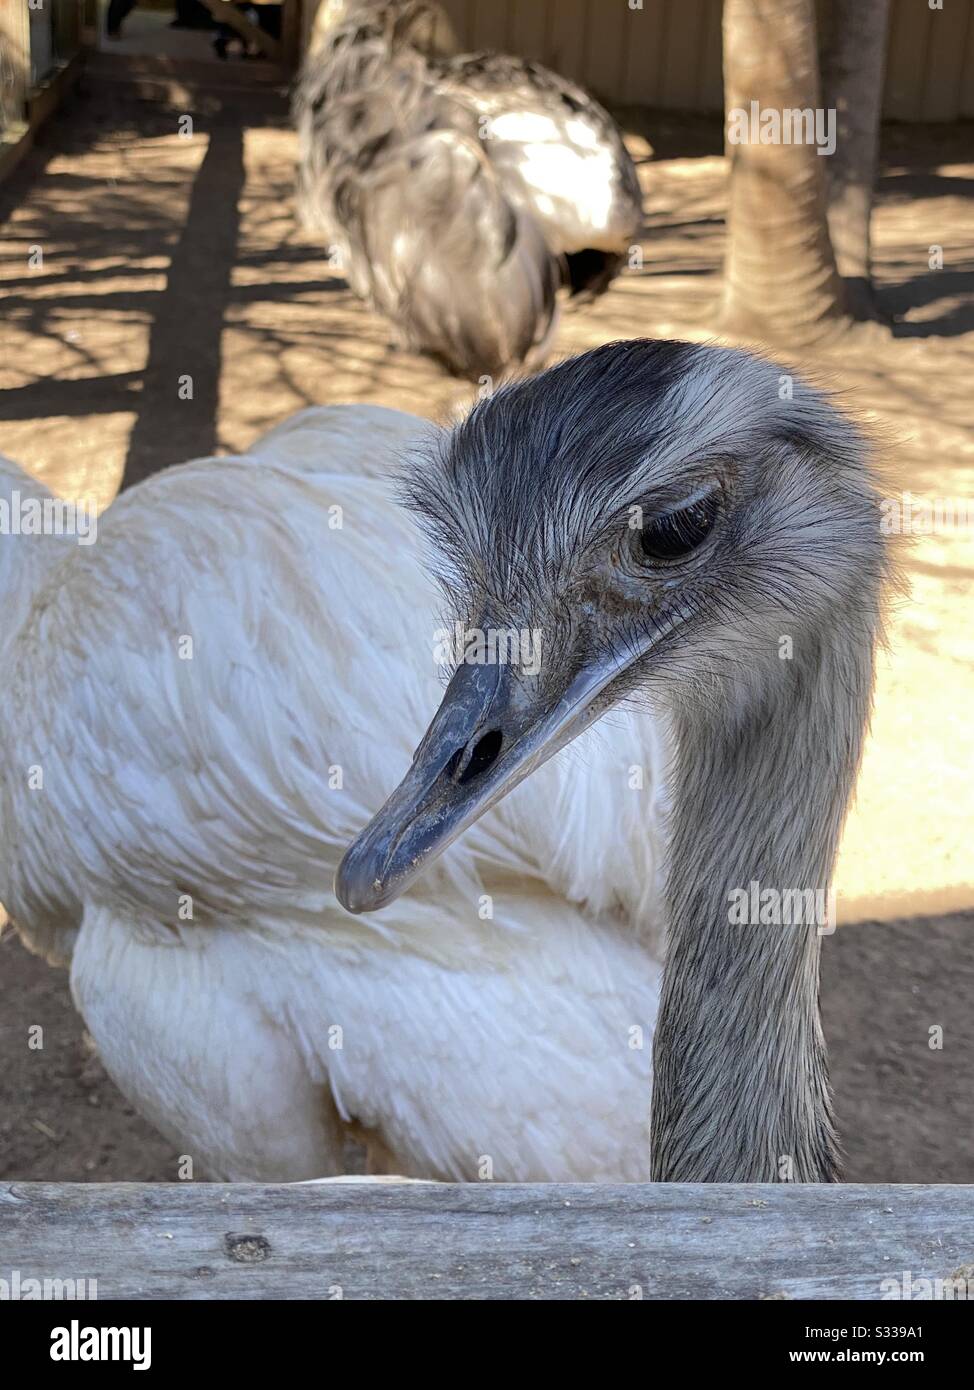 Nahaufnahme des Gesichts eines grauen emu-vogels Stockfoto